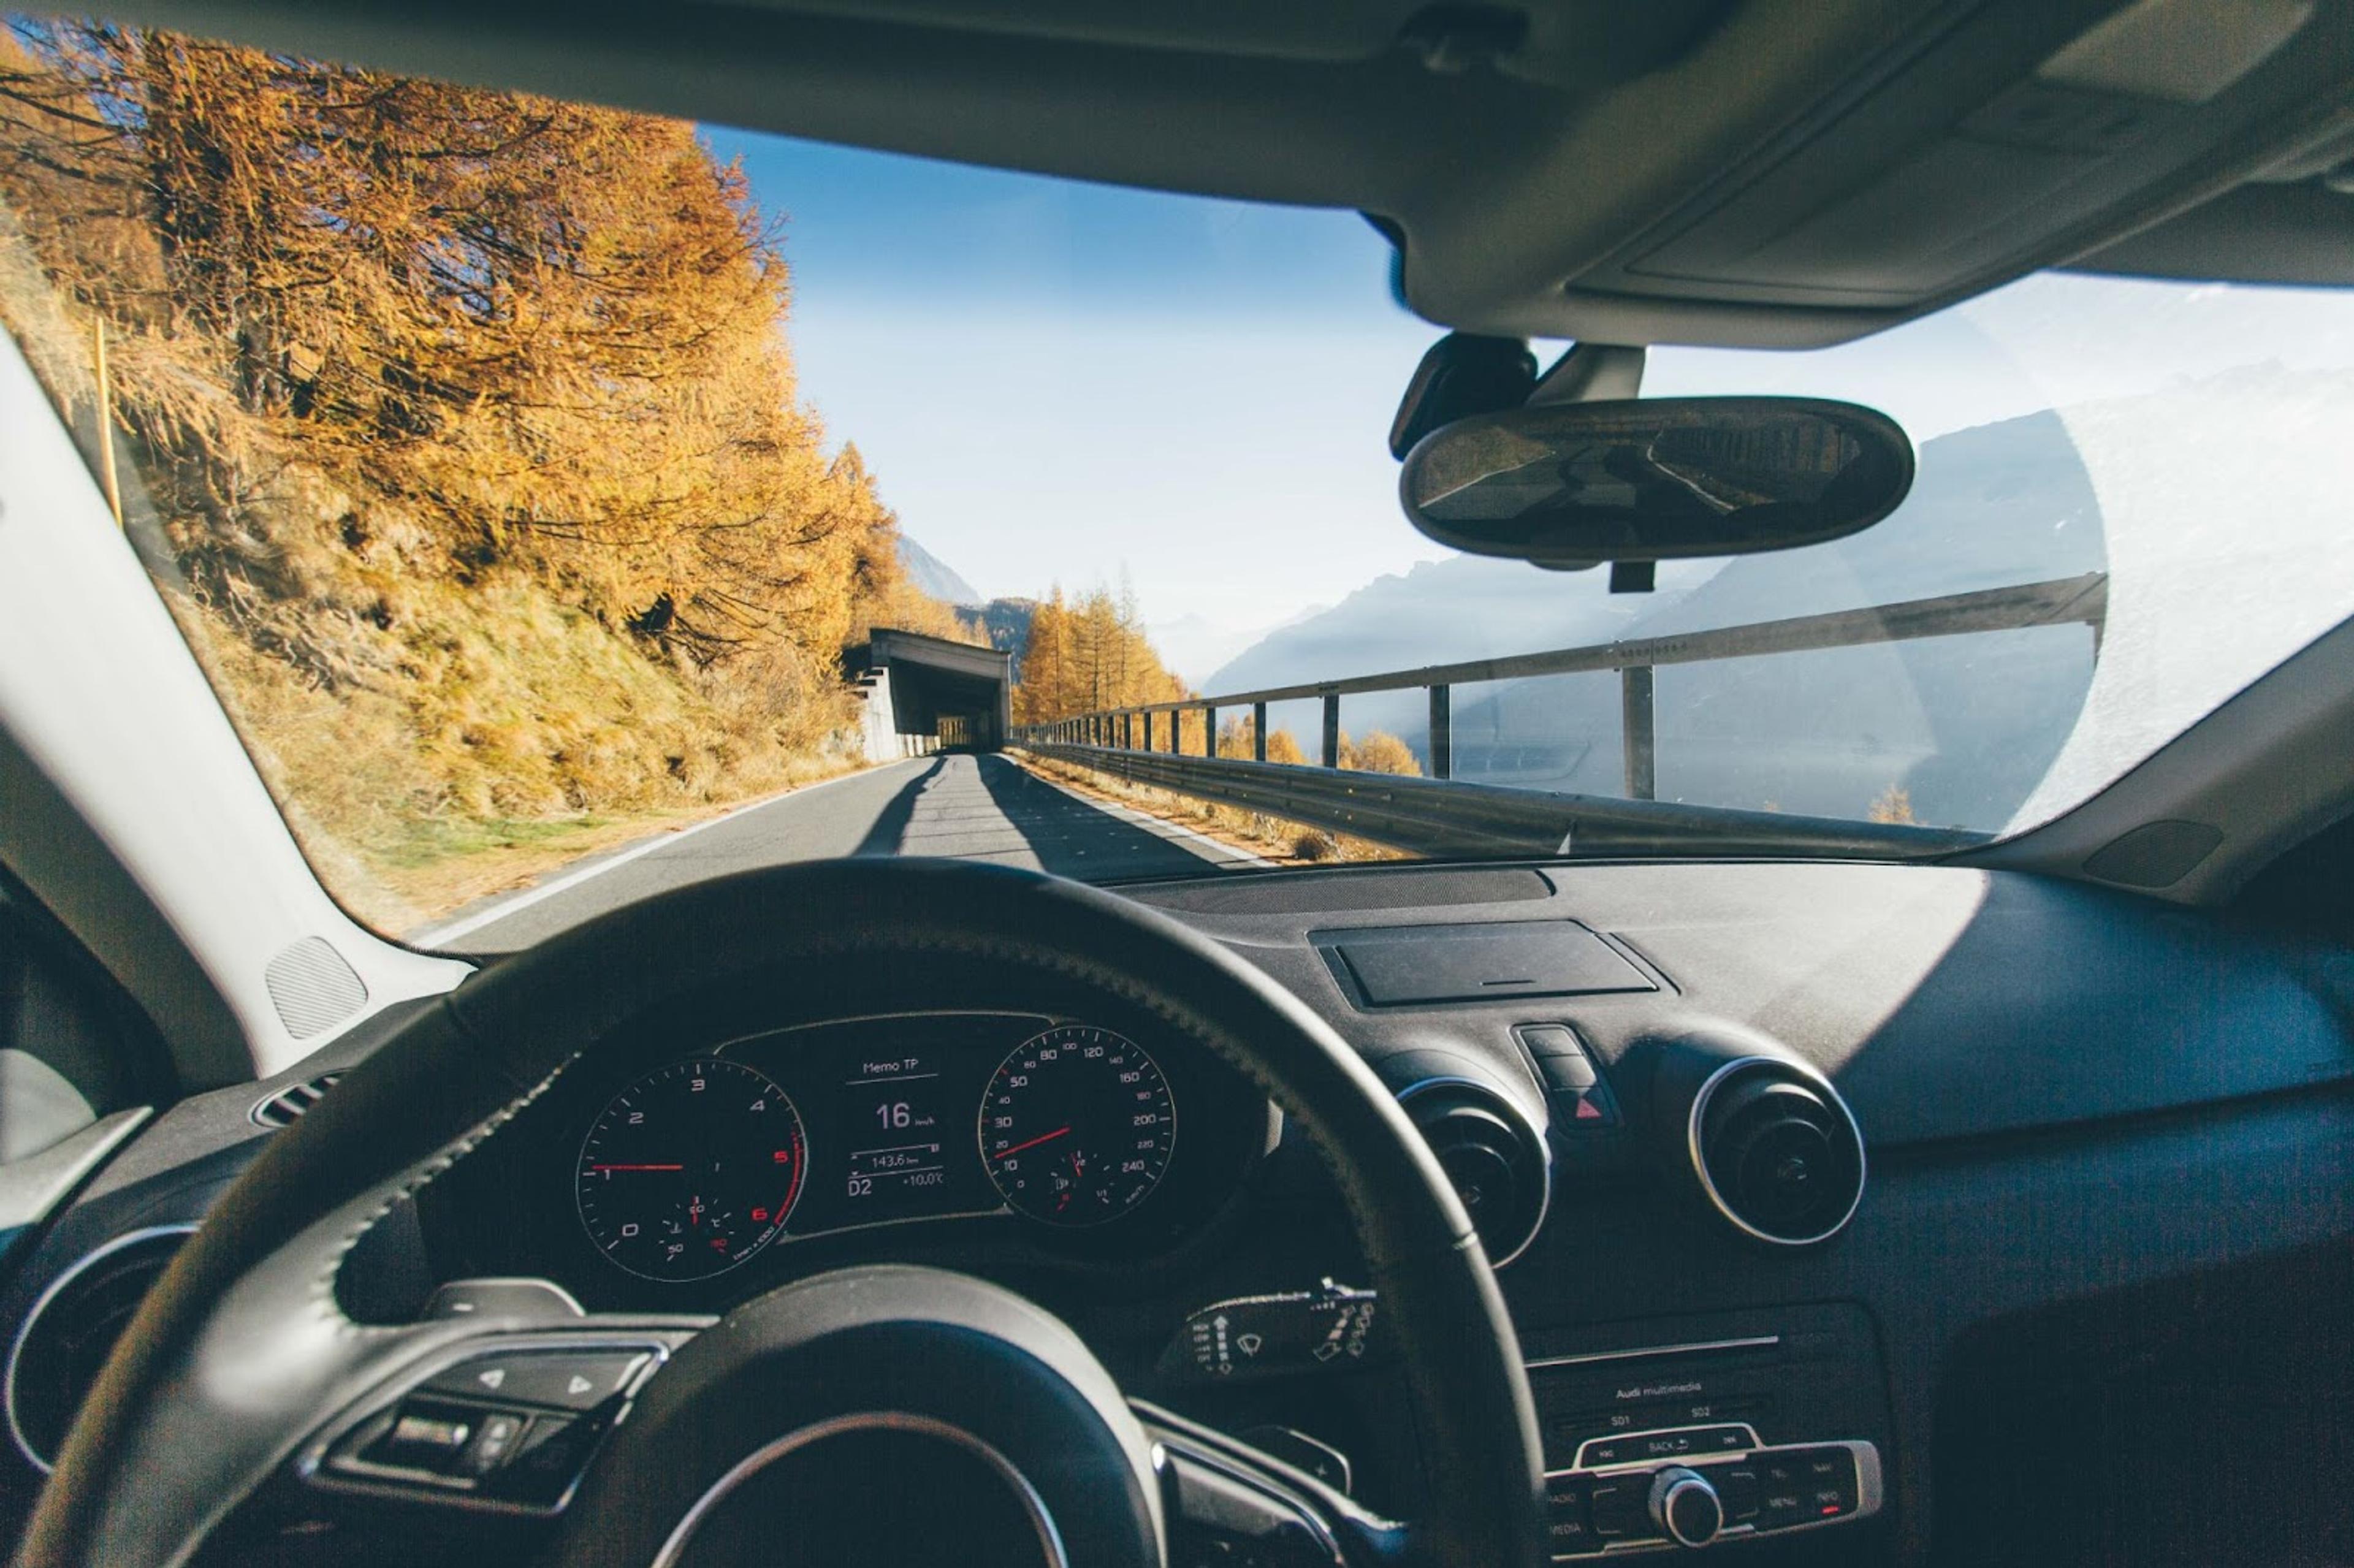 Autóbelső a vezető szemszögéből az őszi sziklaoldali úton